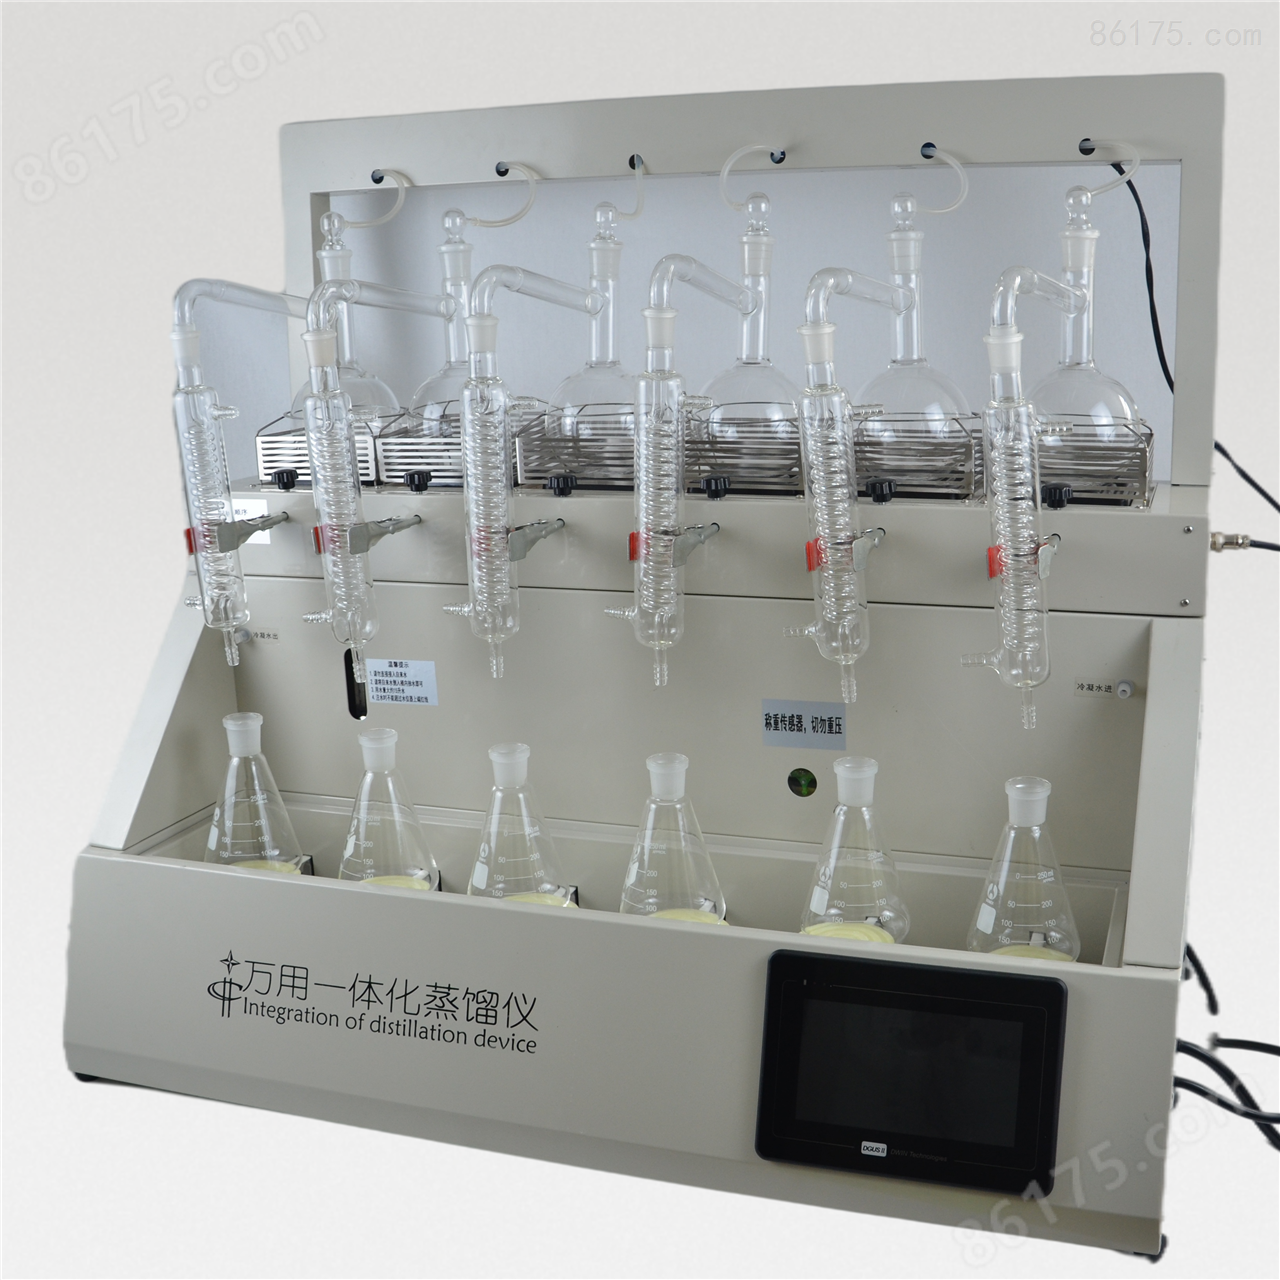 二氧化硫蒸馏装置 实验室用蒸馏器